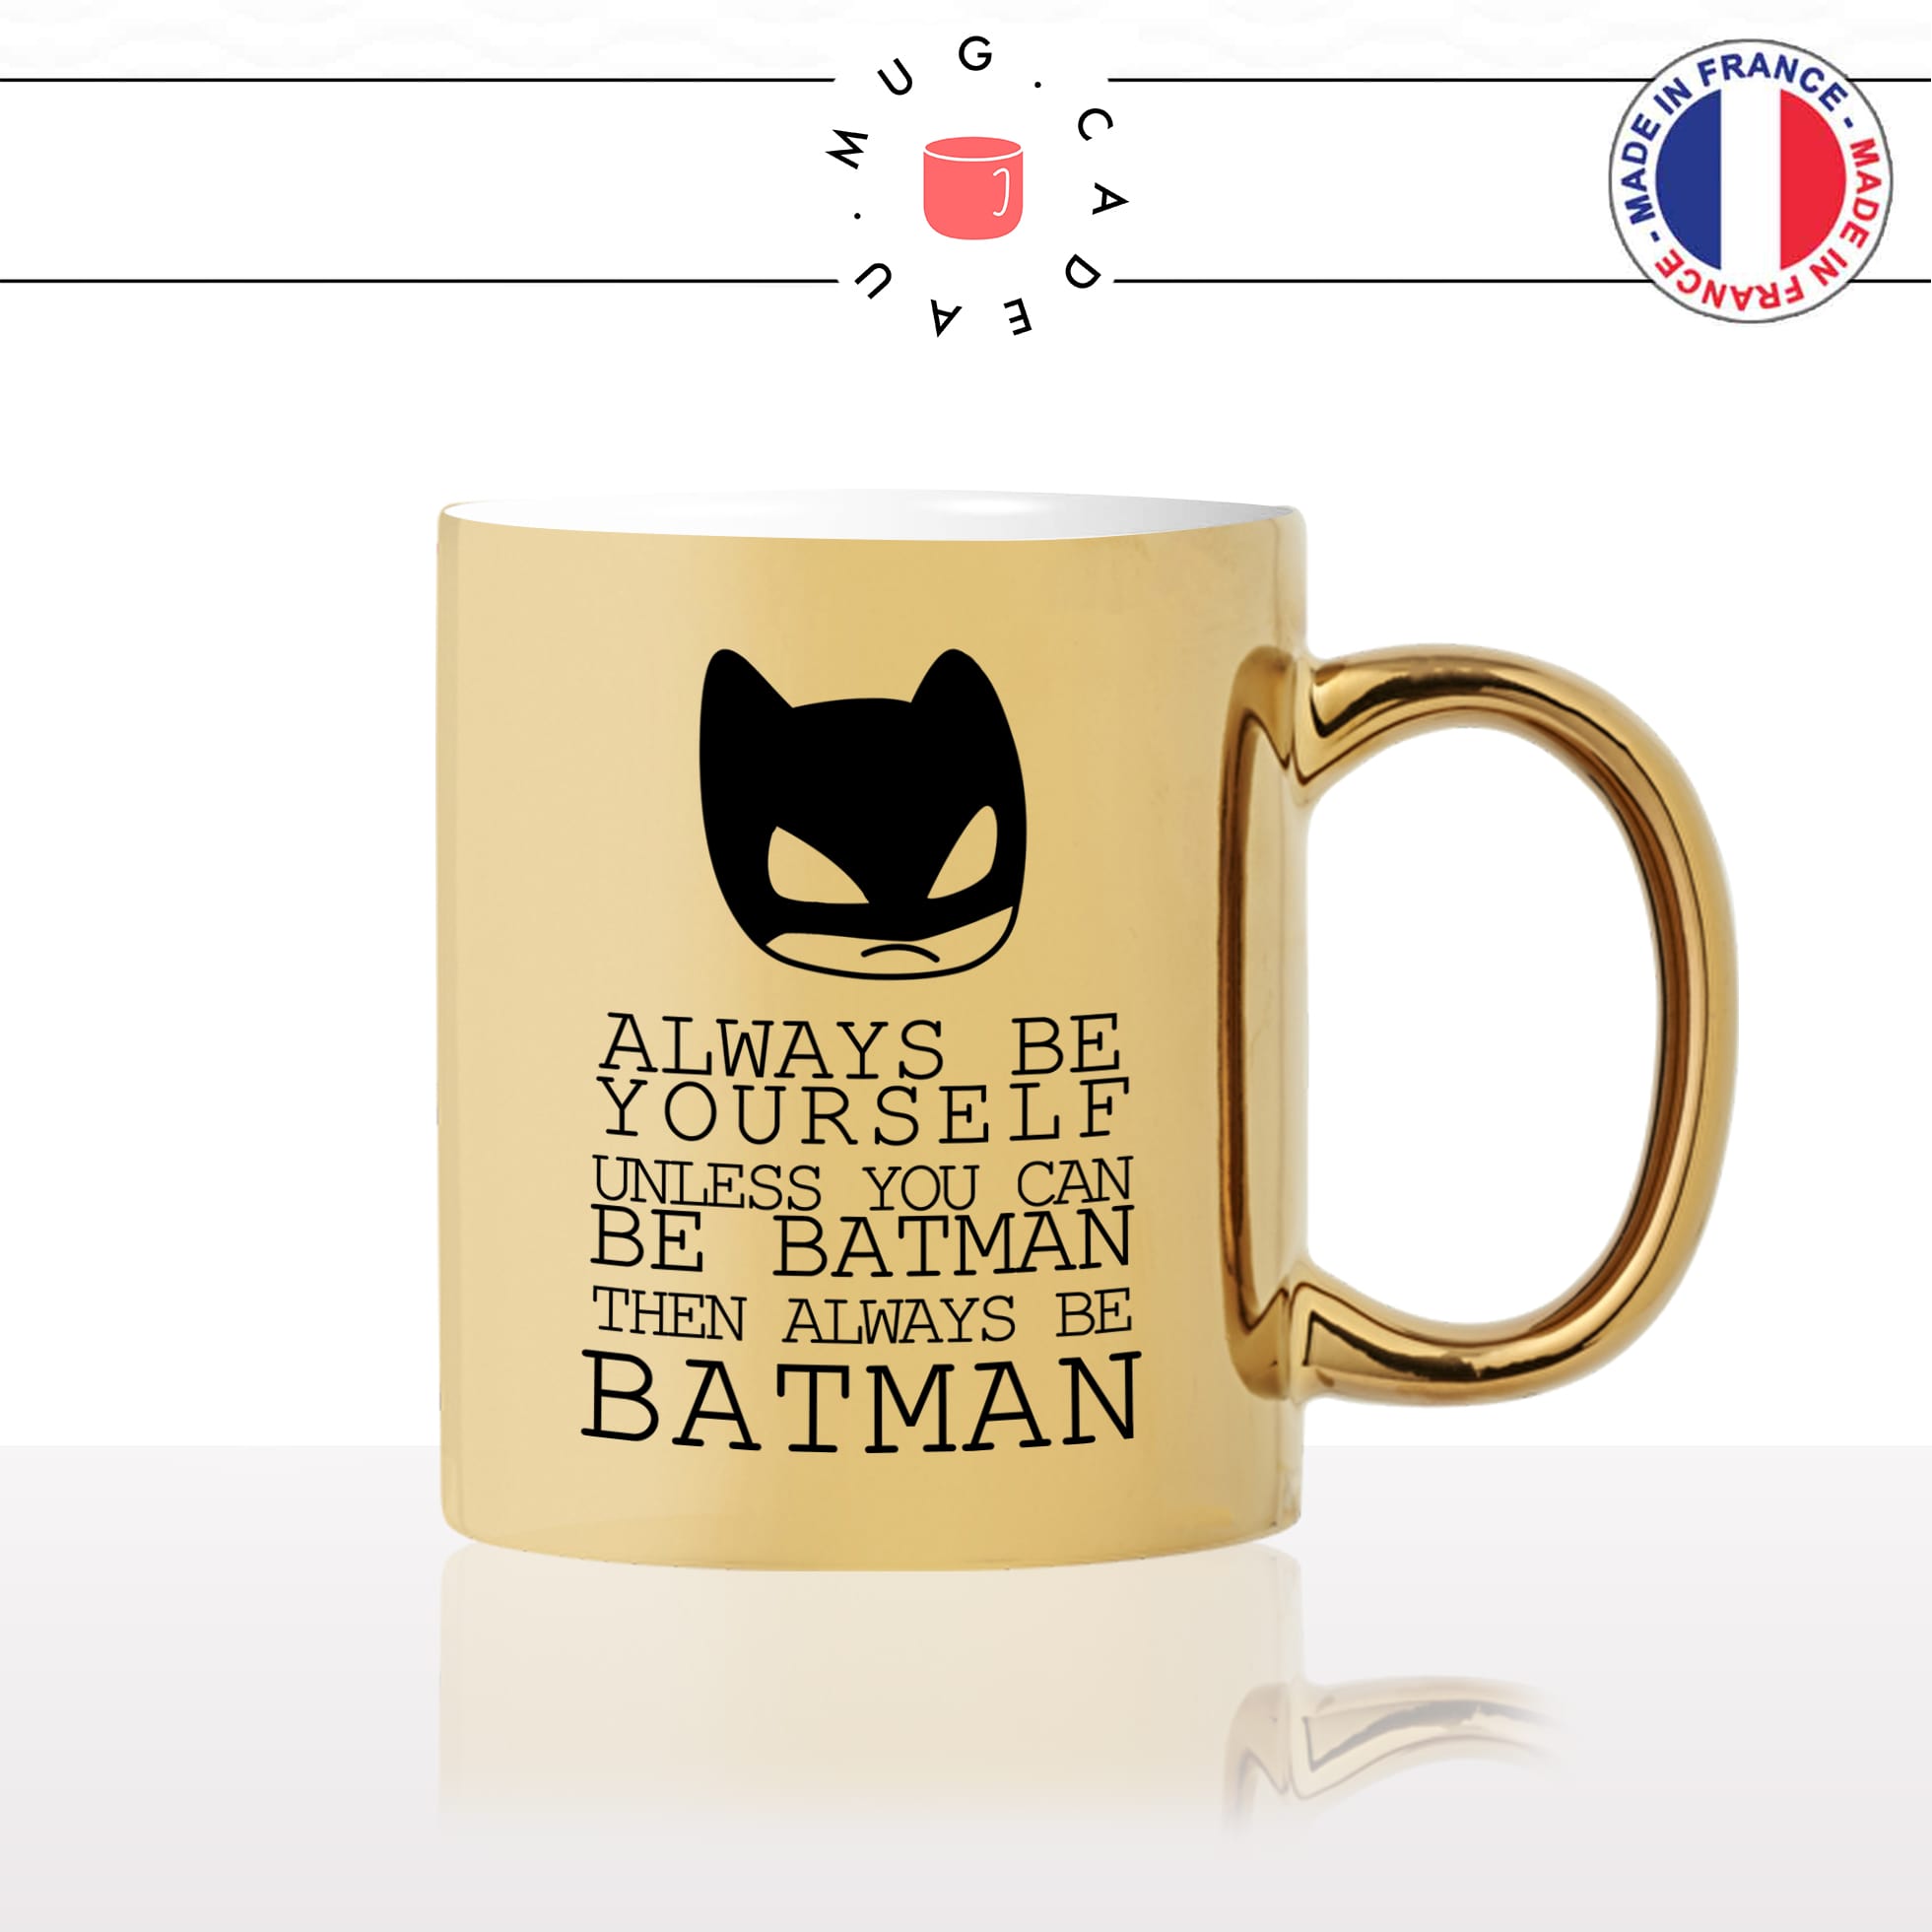 mug-tasse-doré-or-gold-super-héro-be-yourself-be-batman-masque-cape-cool-humour-fun-idée-cadeau-personnalisé-café-thé-chocolat2-min